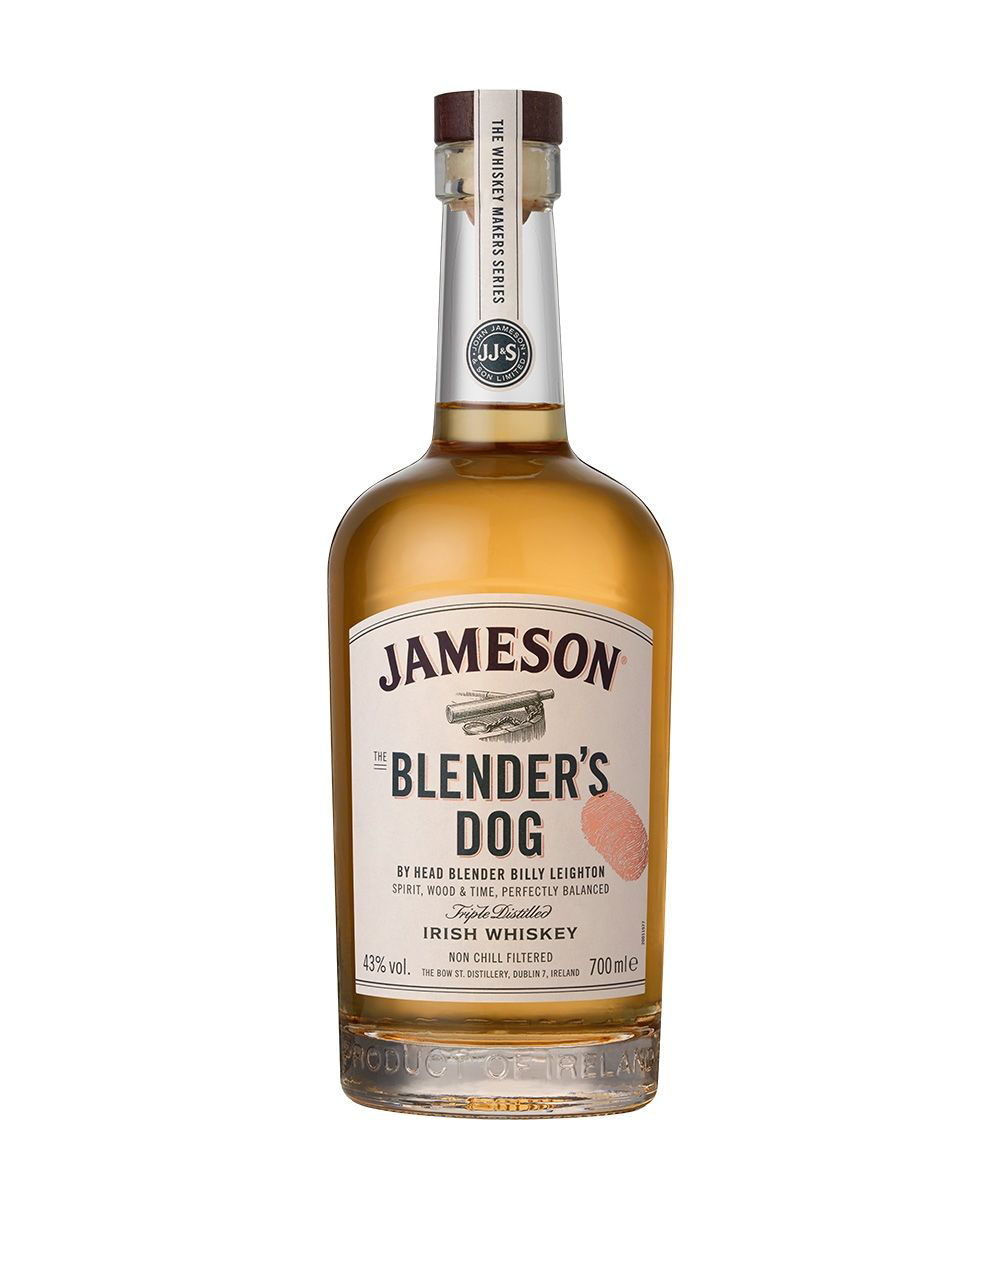 Jameson Blender's Dog - The Whiskey Makers Series